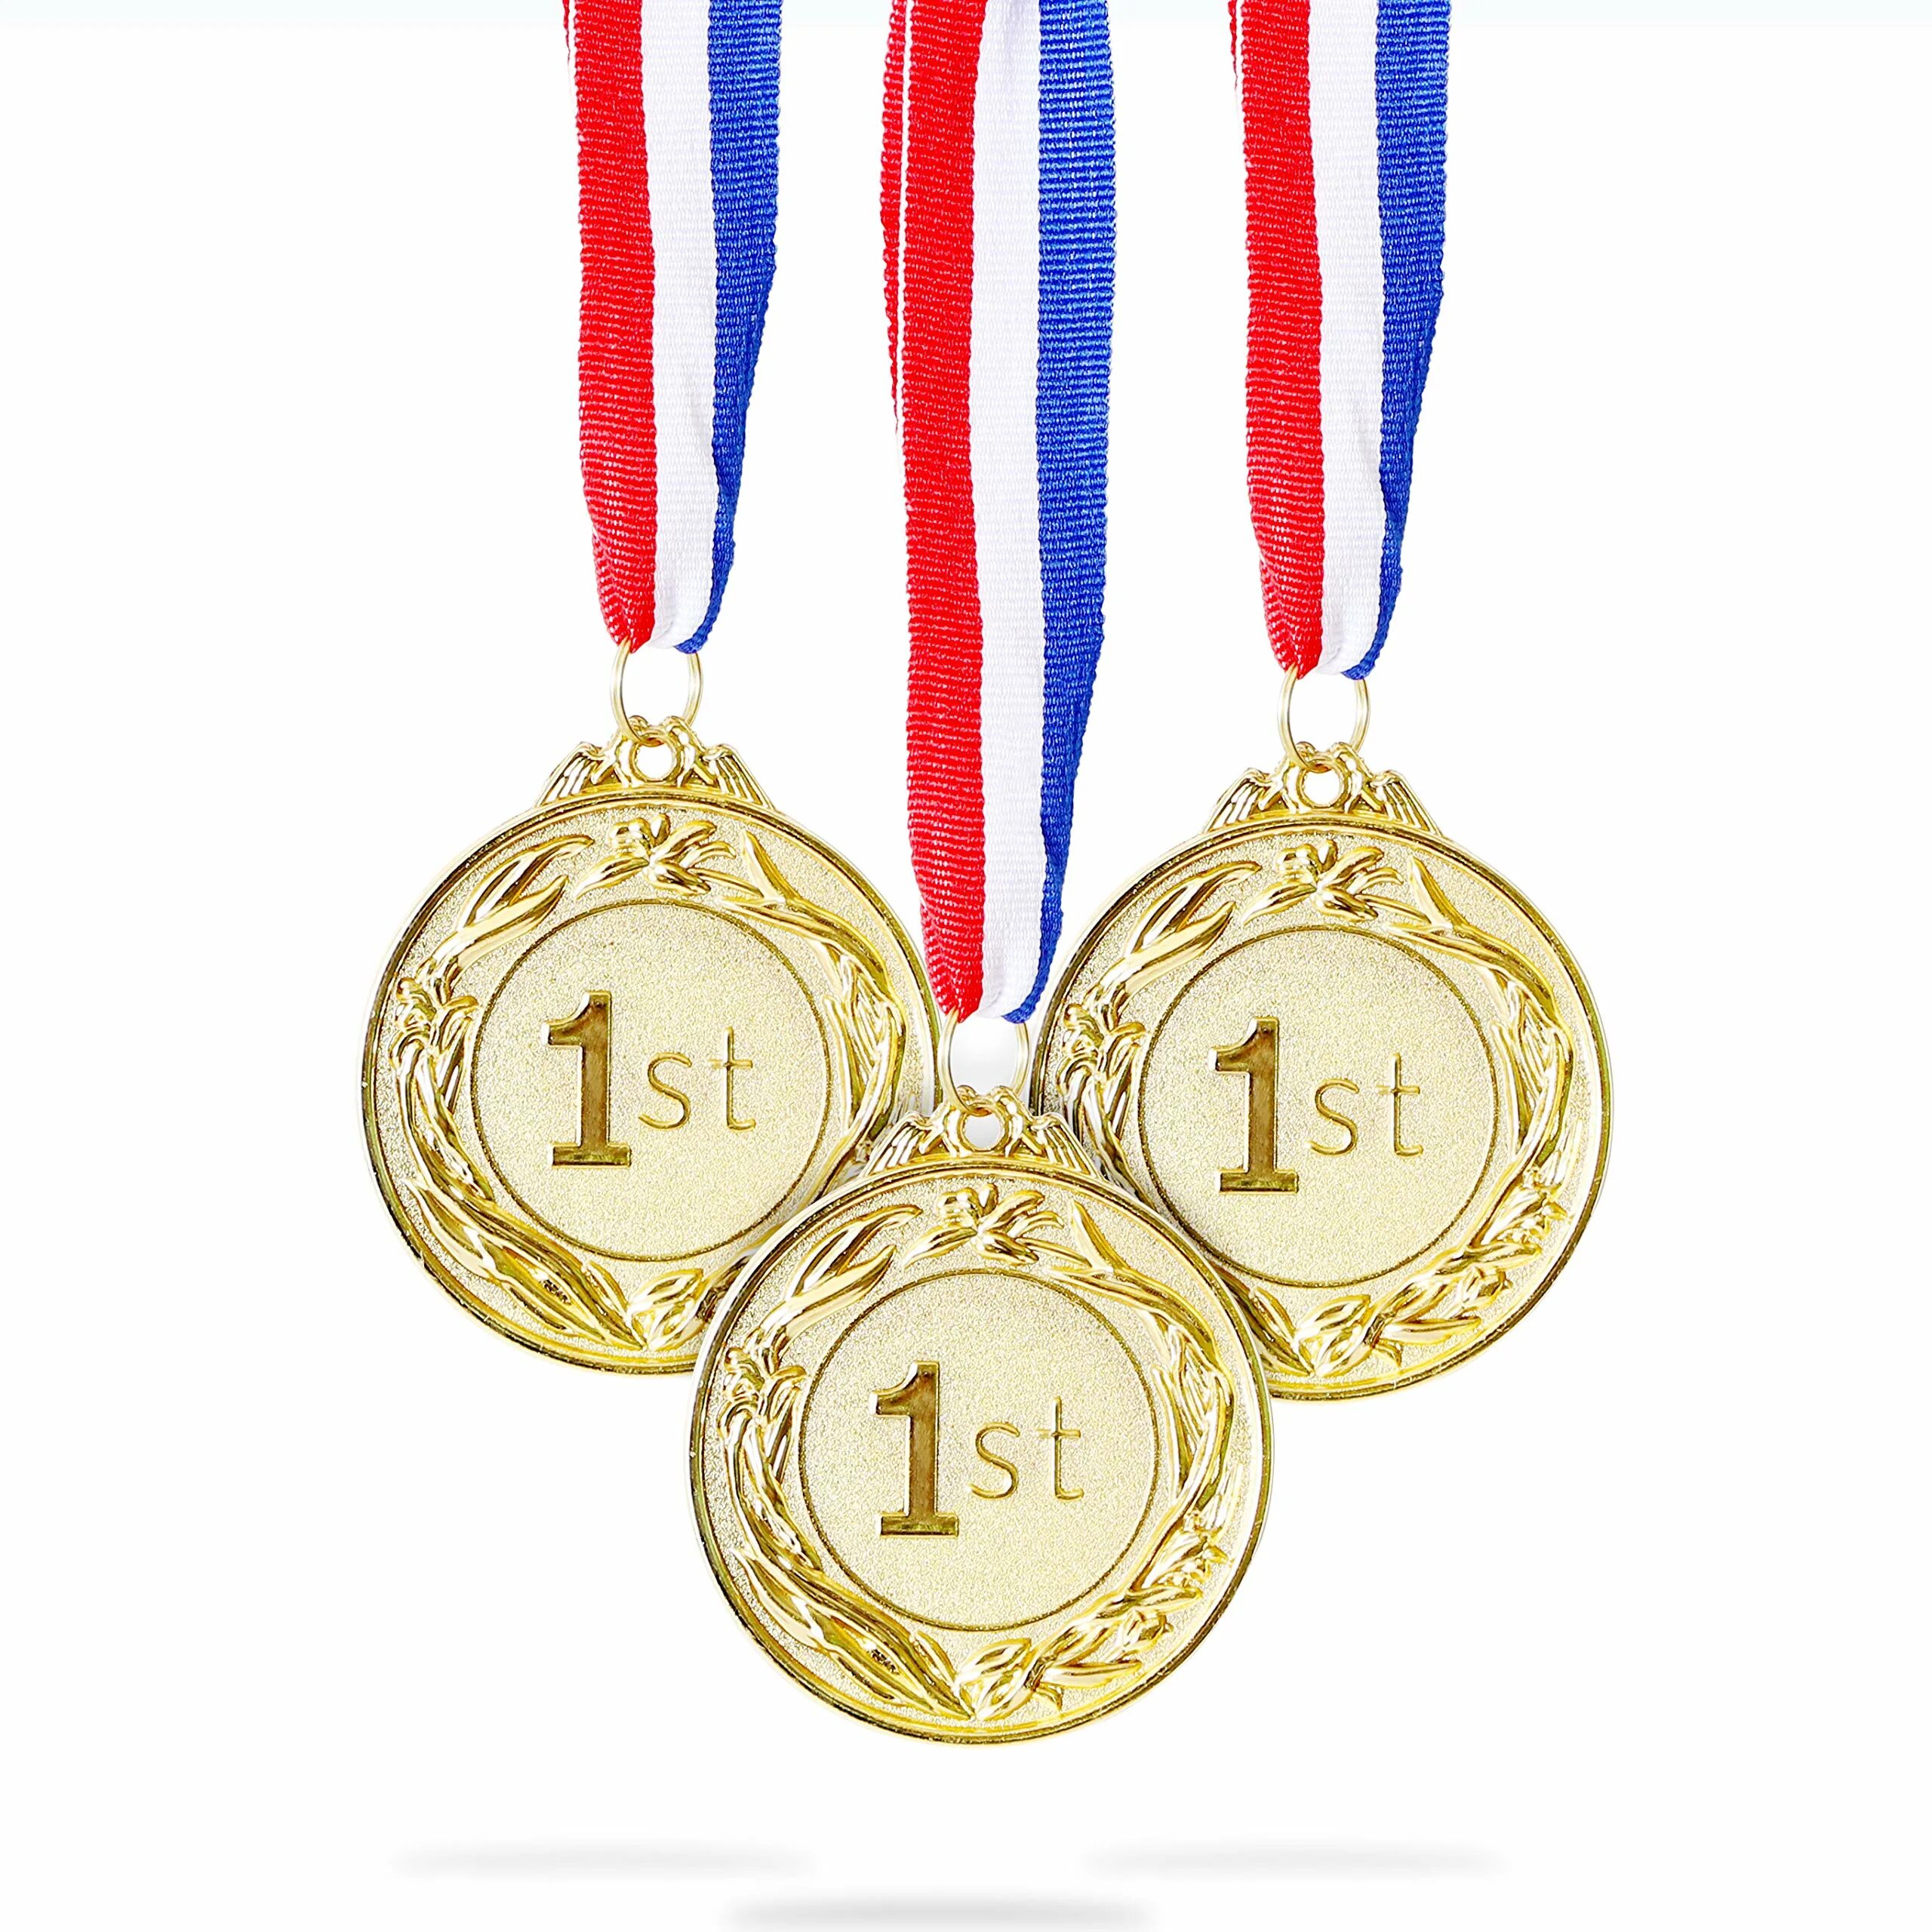 За первое место 4 буквы. Mk181_k - комплект медалей. Медали спортивные. Медаль первое место. Медаль "1 место".